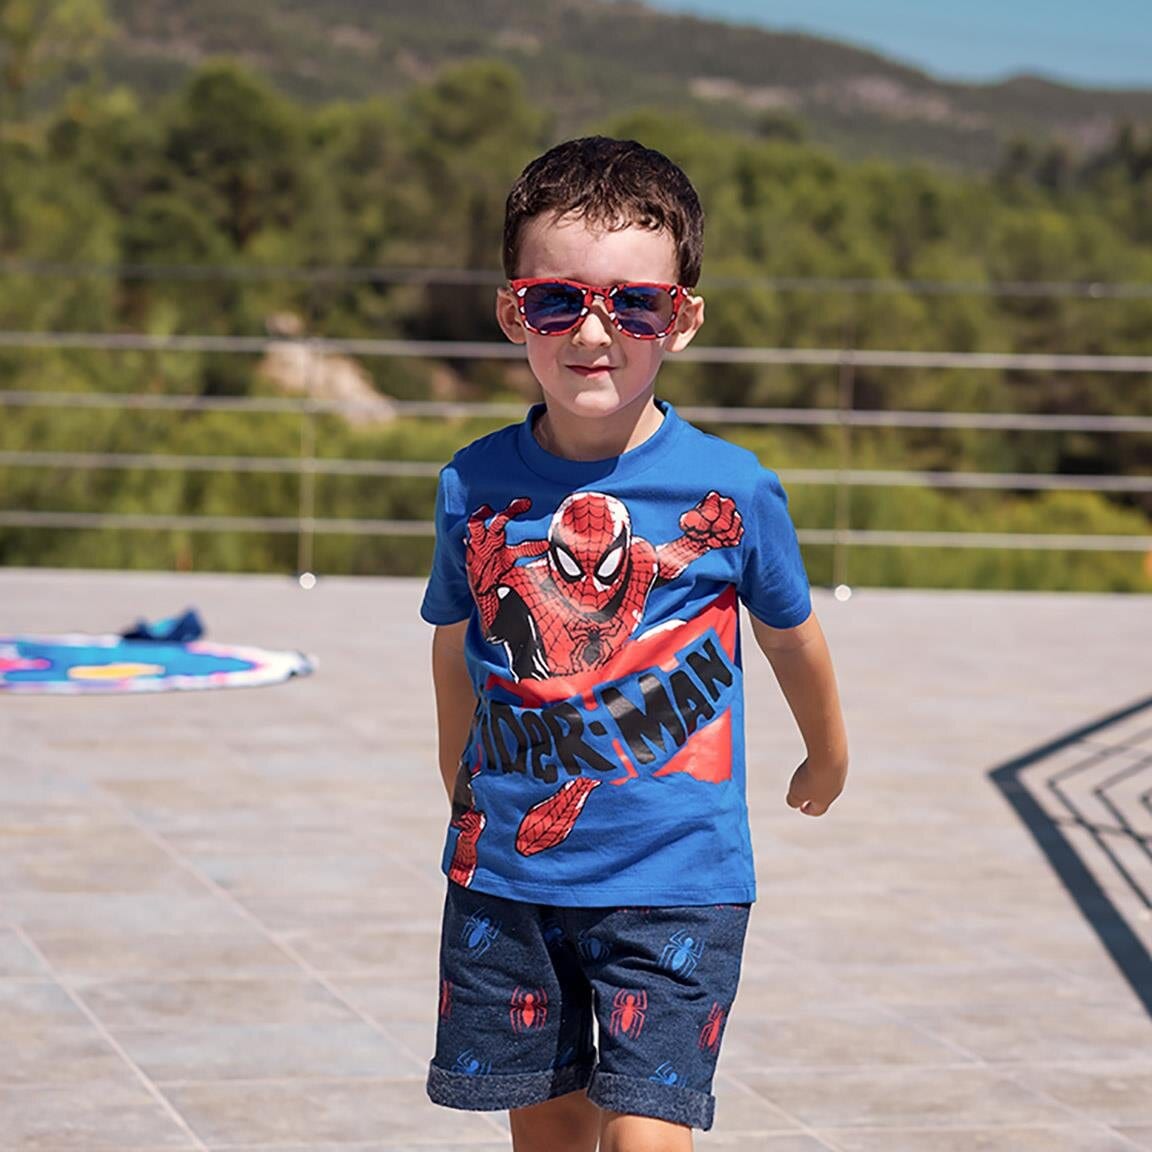 Spiderman - Sonnenbrille für Kinder